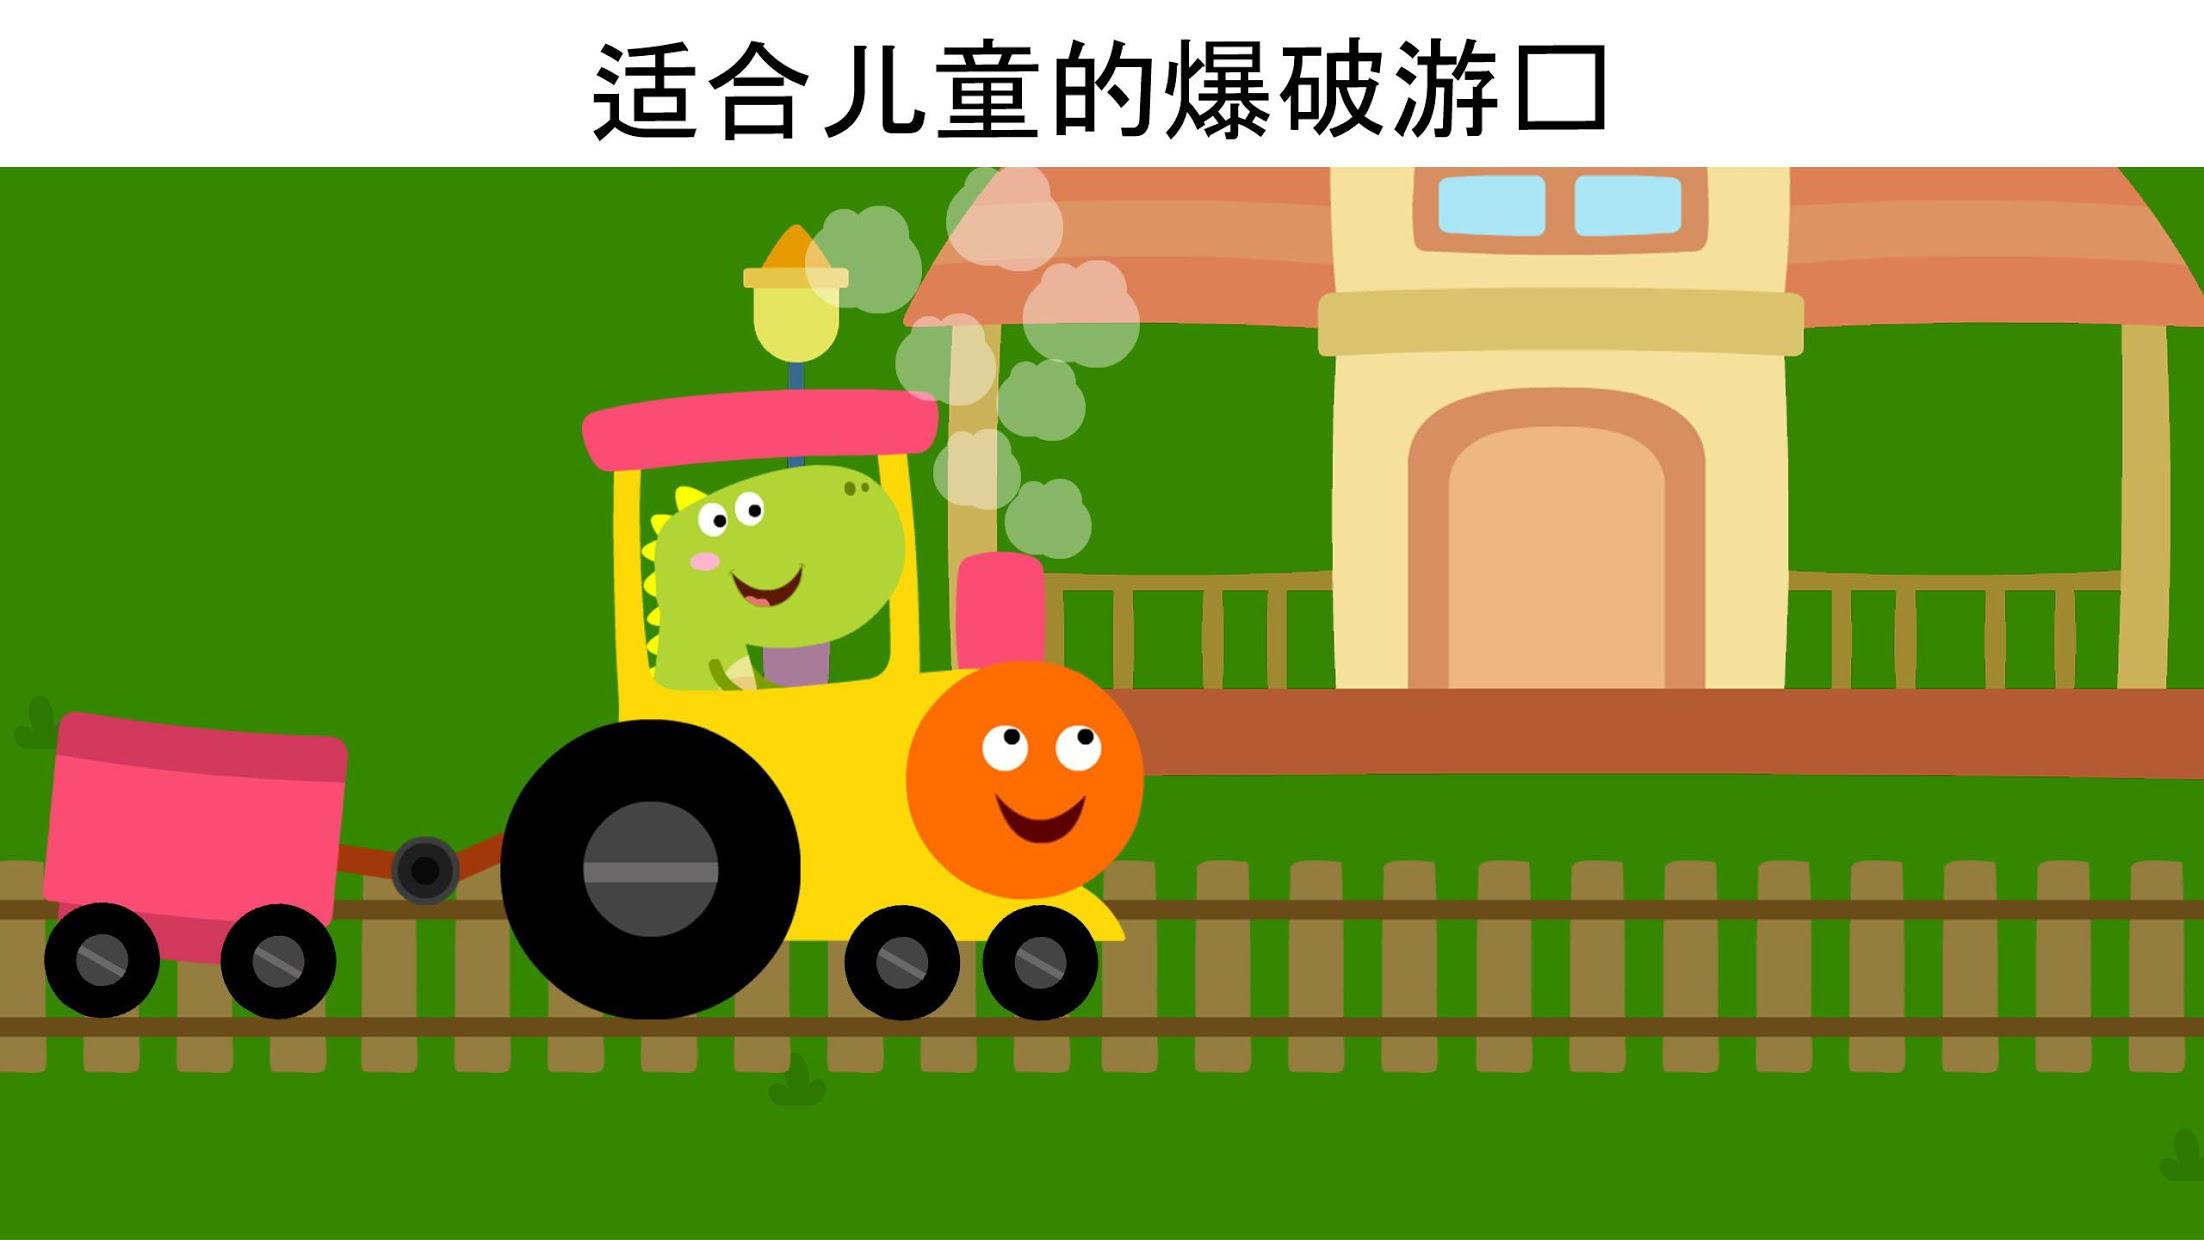 龙火车游戏--为小孩和学步儿童设计的龙游戏_截图_5